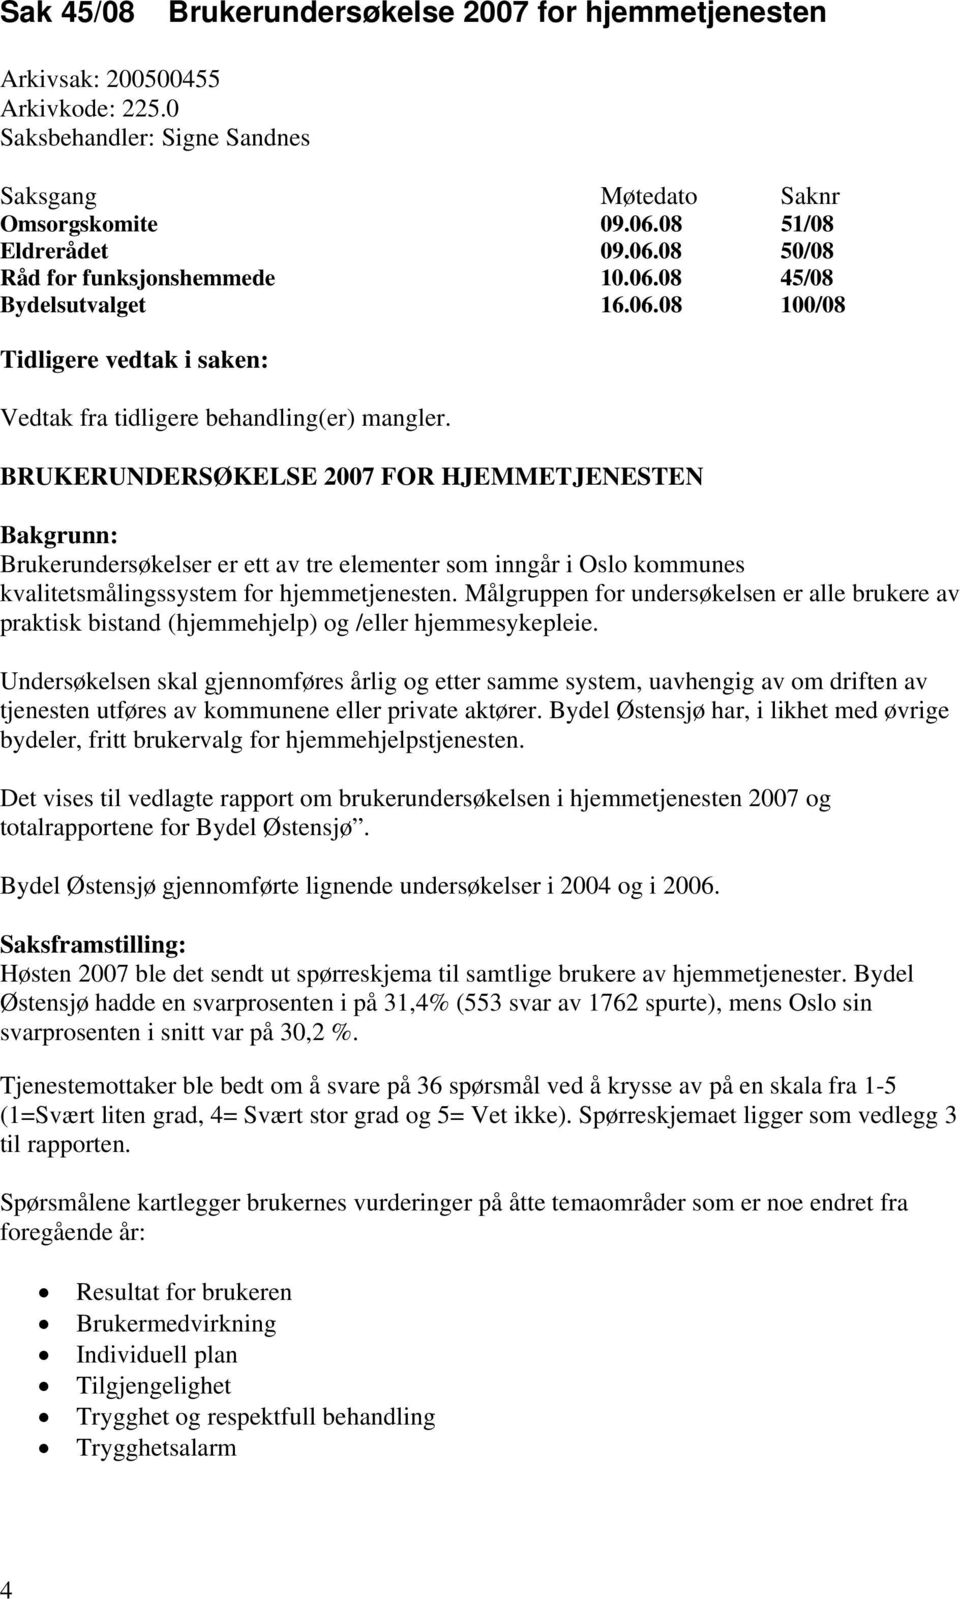 BRUKERUNDERSØKELSE 2007 FOR HJEMMETJENESTEN Bakgrunn: Brukerundersøkelser er ett av tre elementer som inngår i Oslo kommunes kvalitetsmålingssystem for hjemmetjenesten.